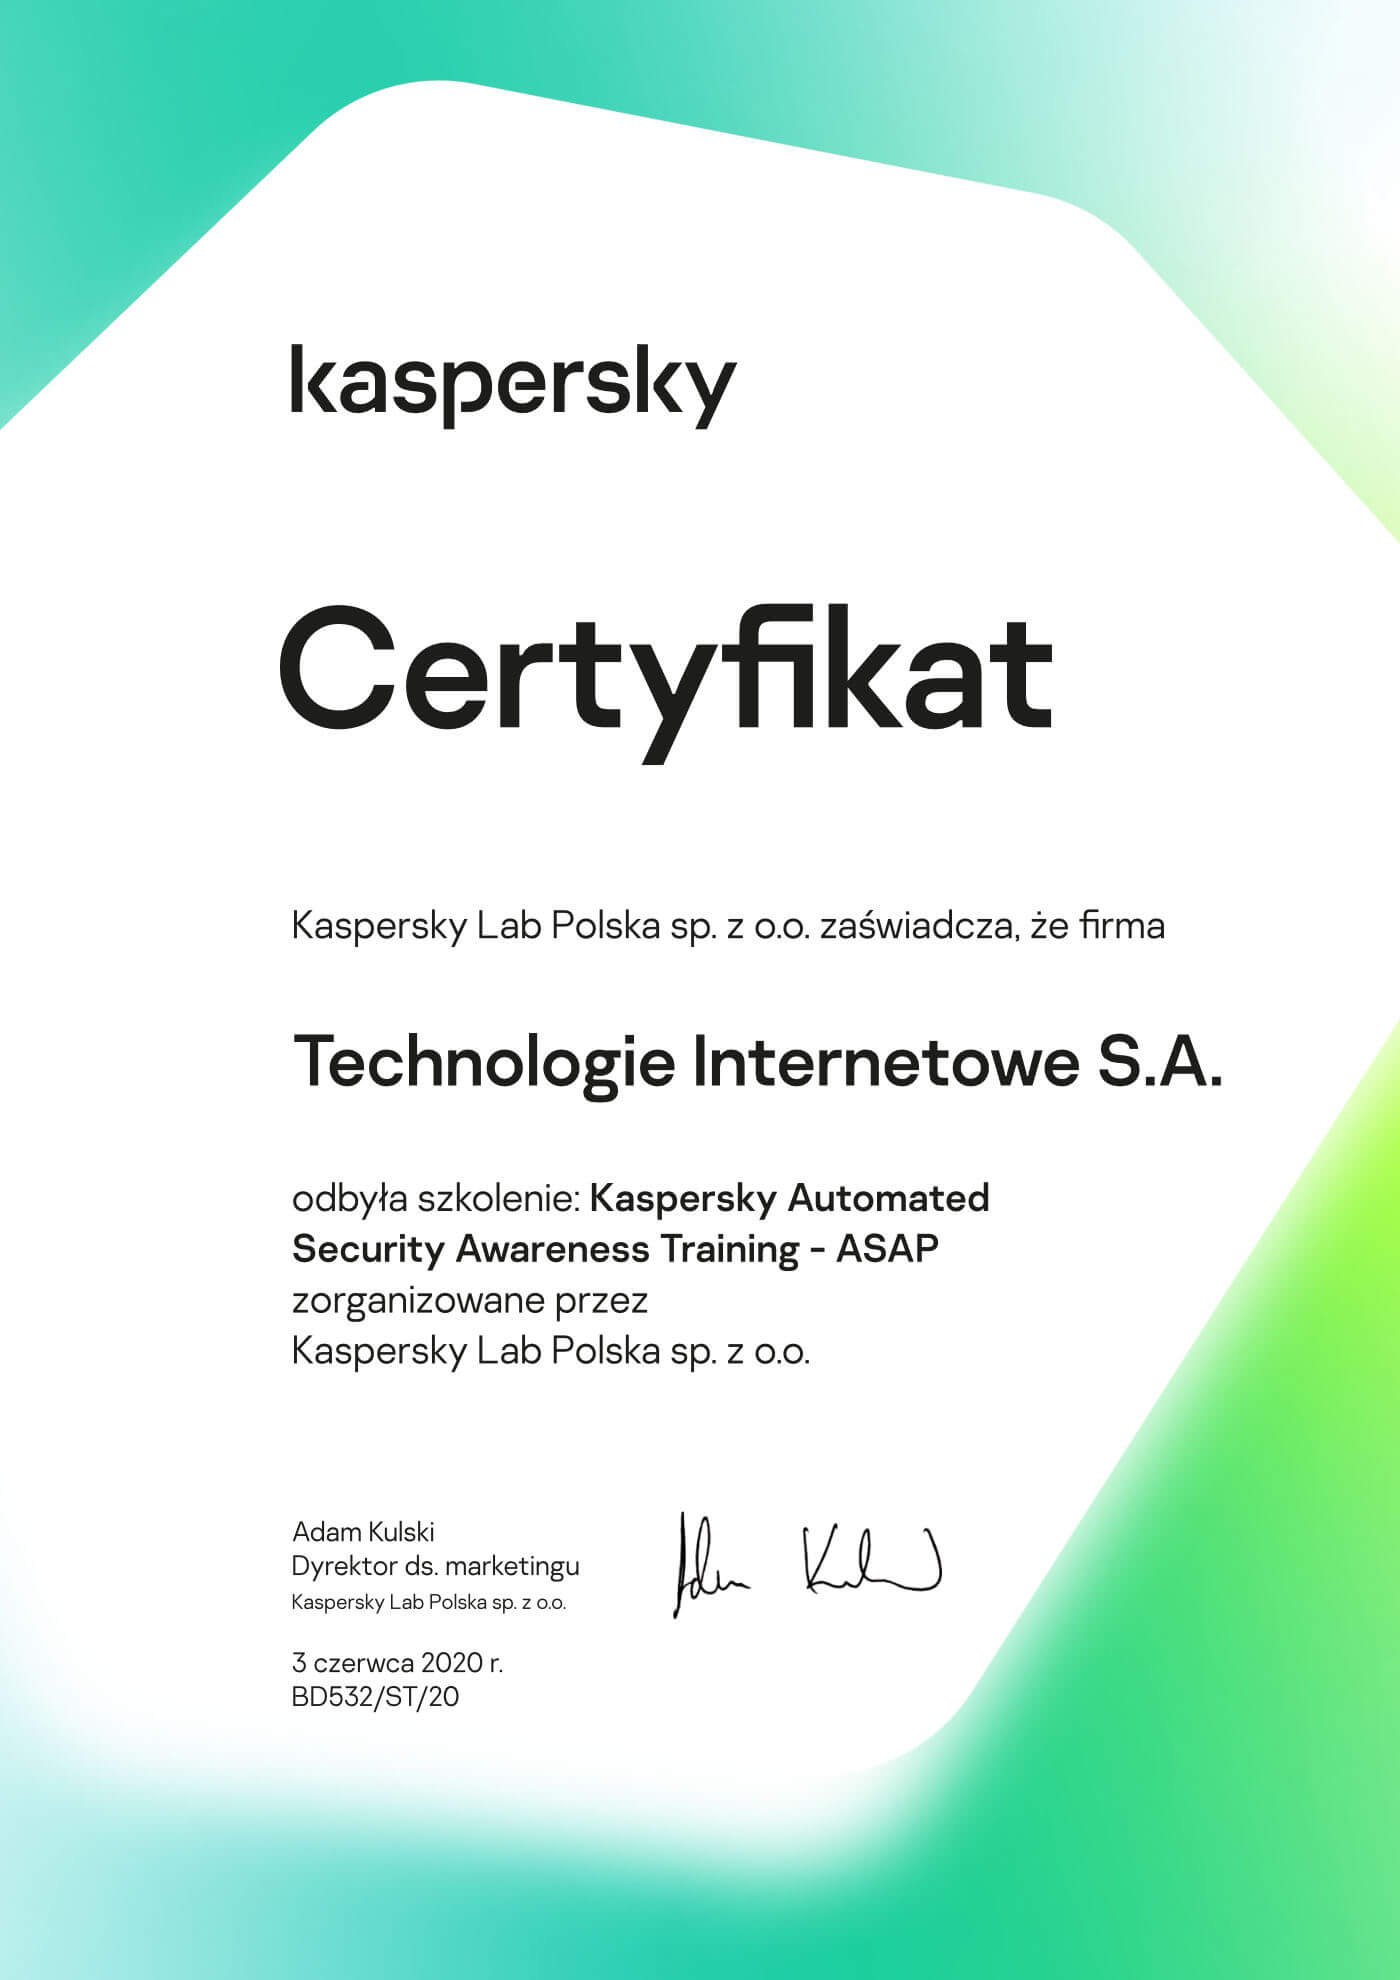 Kaspersky - Certyfikat odbycia szkolenia